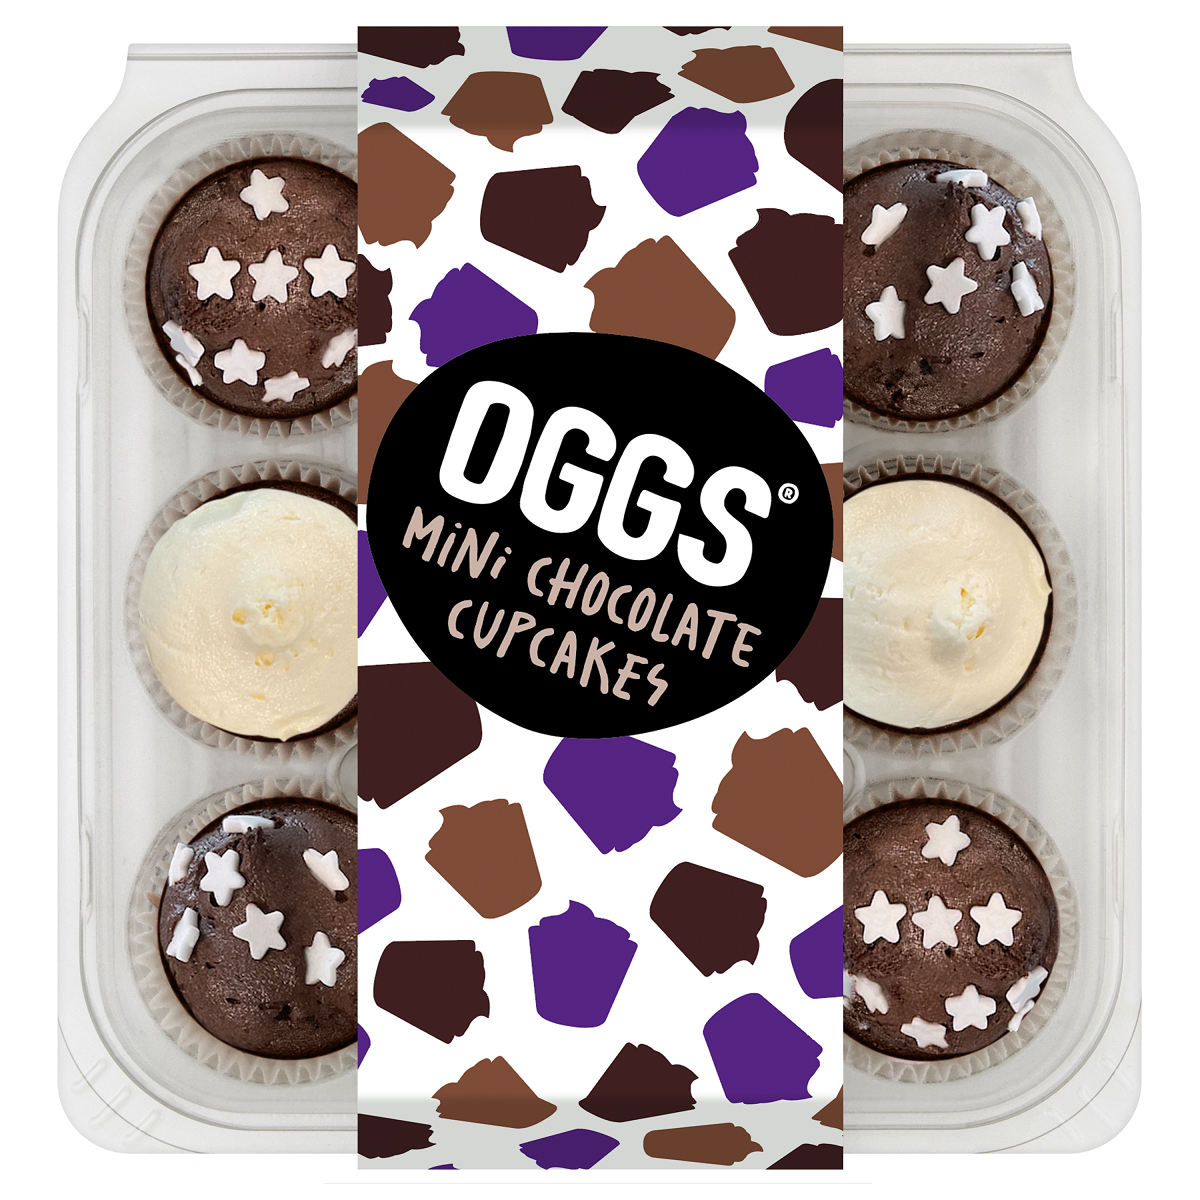 OGGS Mini Vegan Chocolate Cupcakes